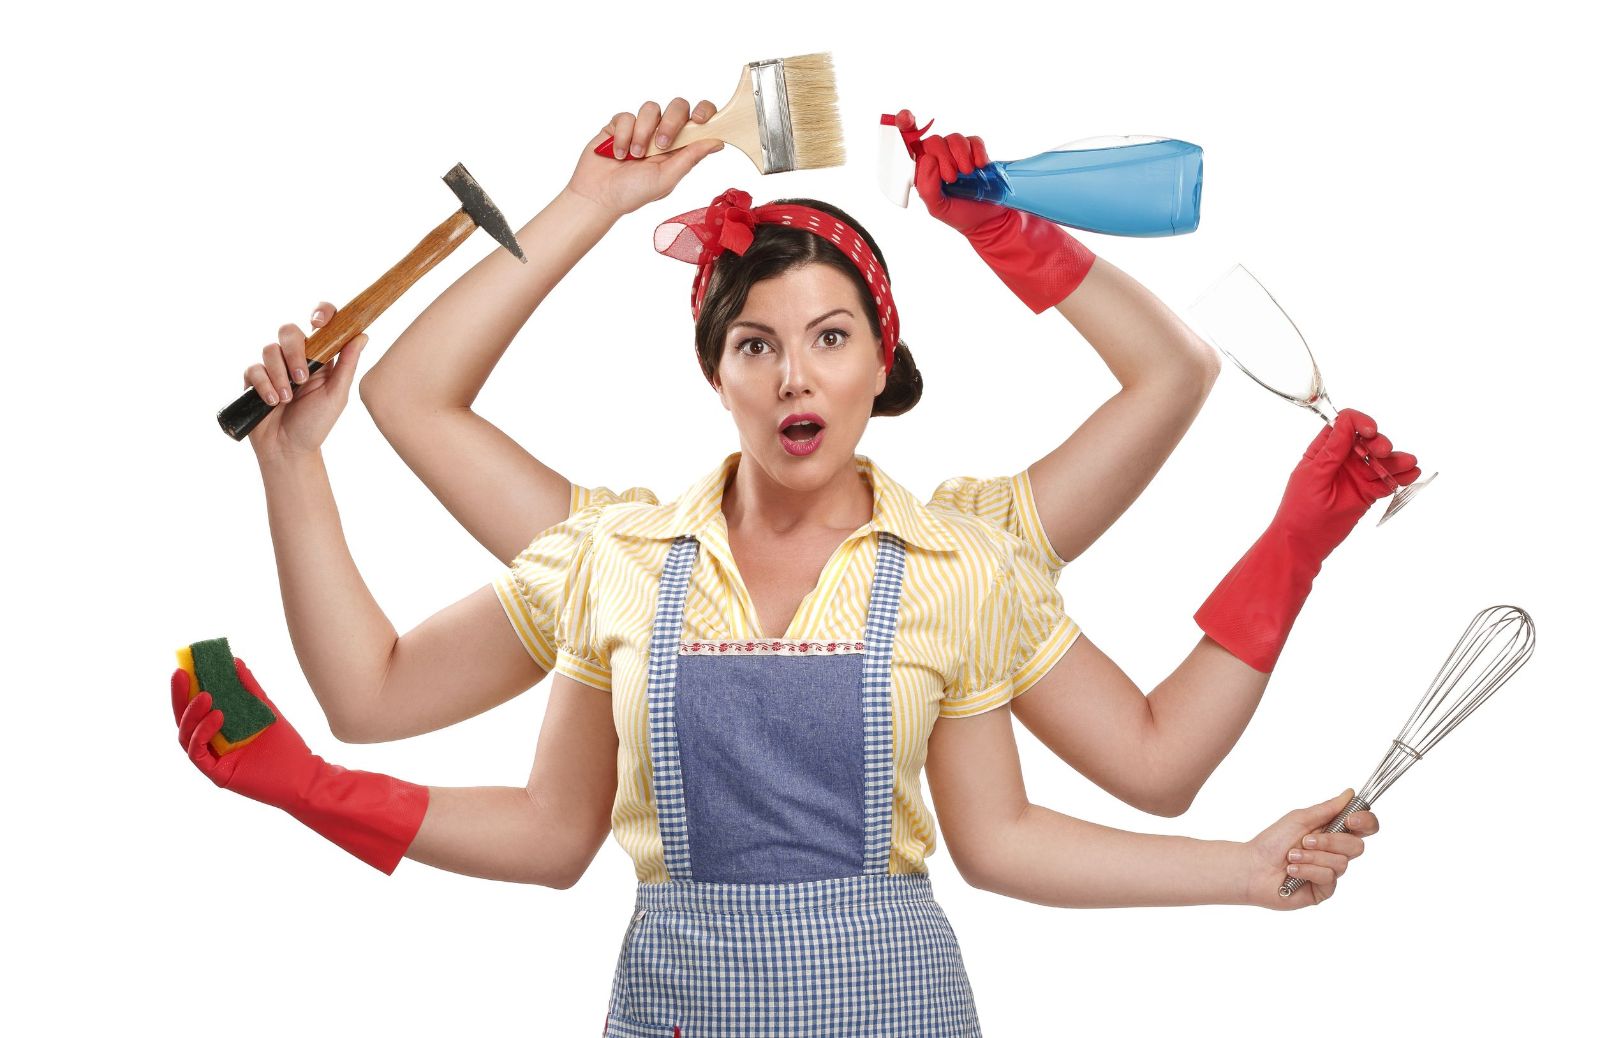 Fare le casalinghe oggi: un lavoro o un lusso?